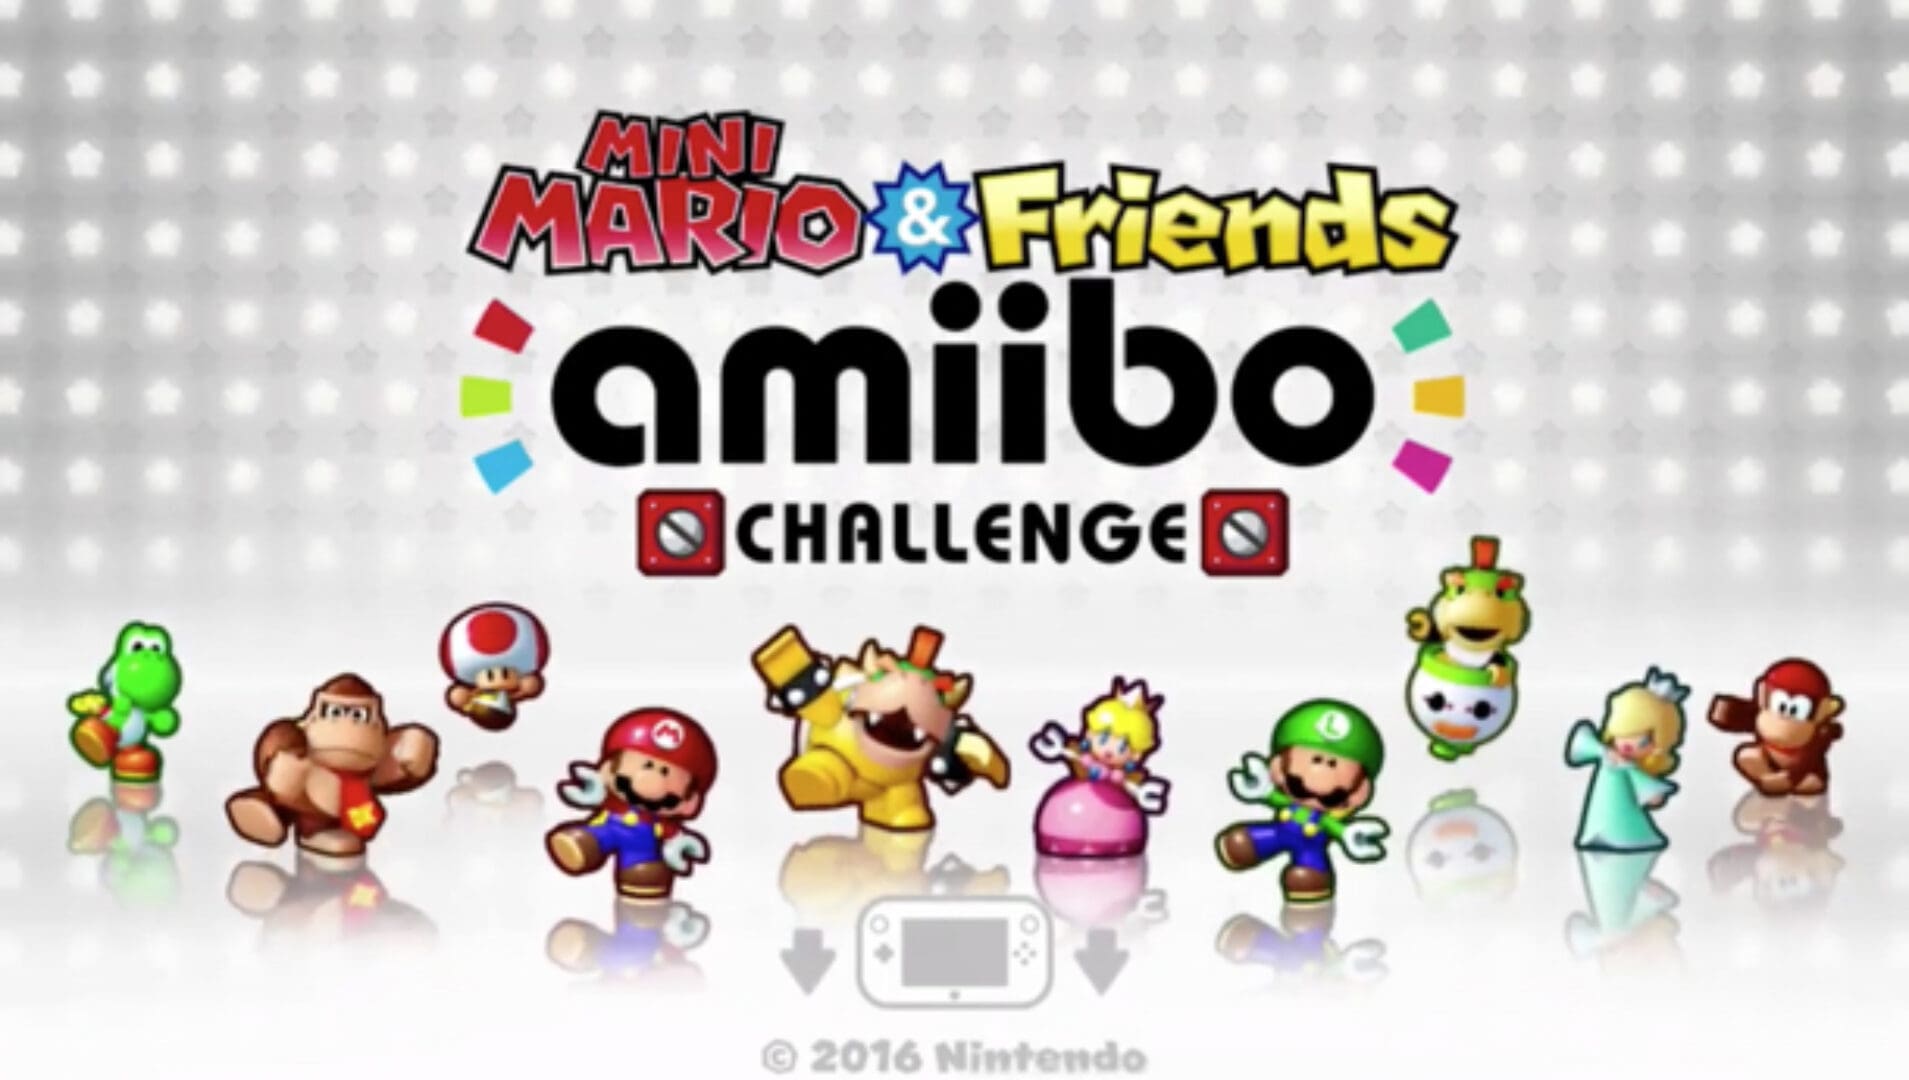 Mini Mario & Friends Amiibo Challenge Wii U Codes Giveaway